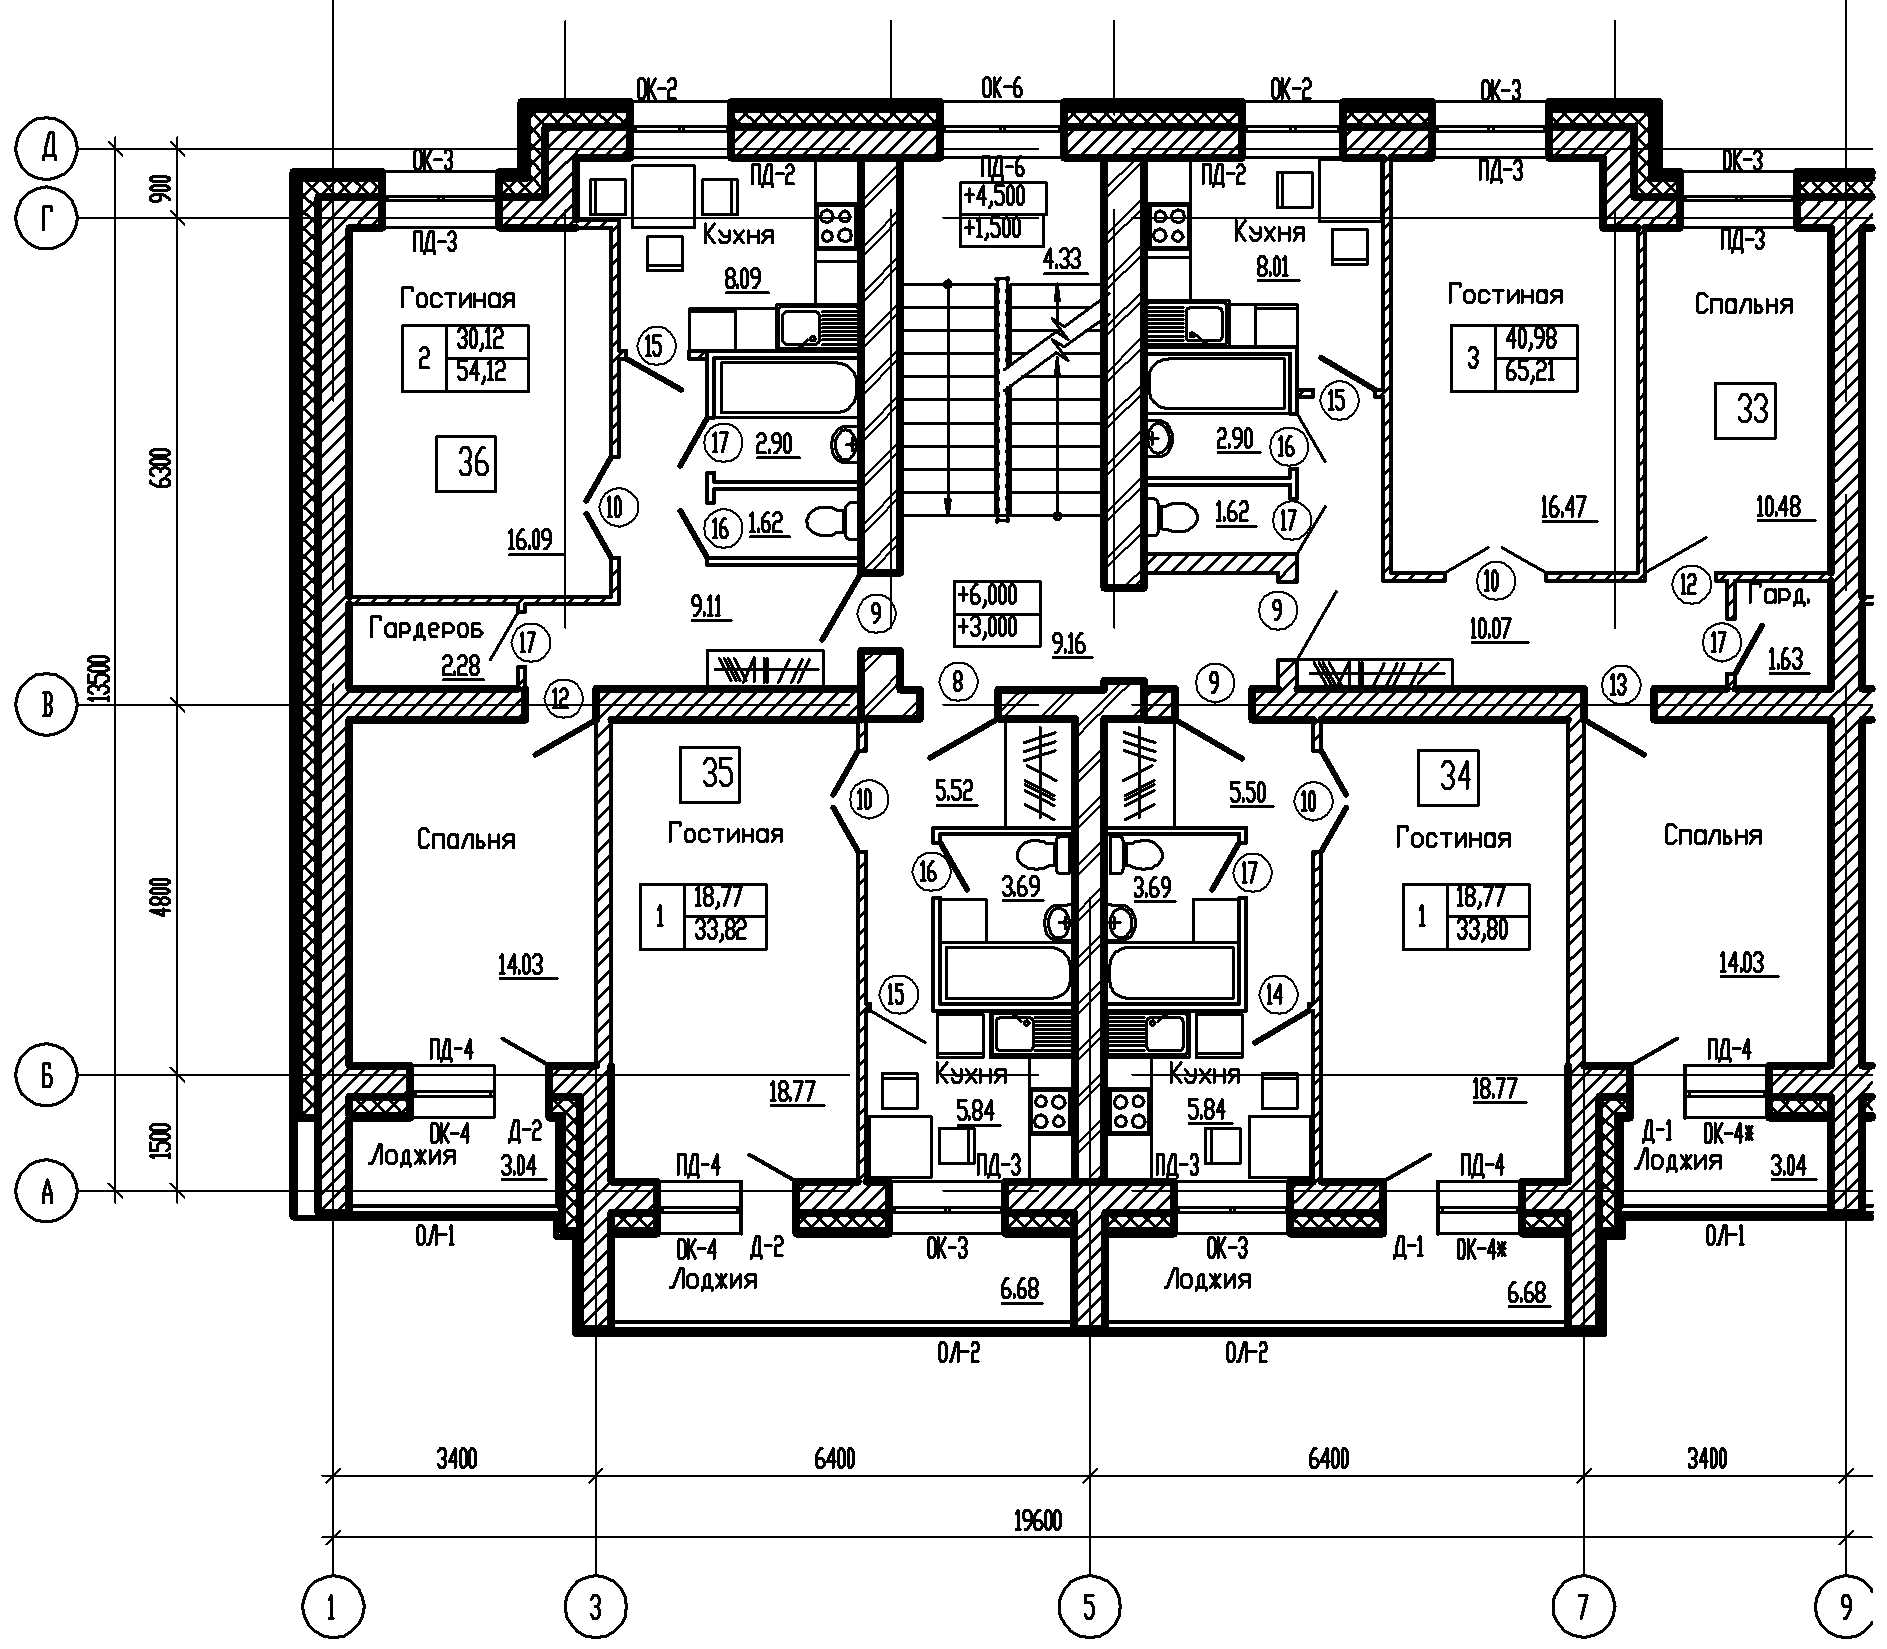 Типовой этаж дома. Схема подъезда многоэтажного жилого дома-. План многоэтажного жилого дома чертеж. Схема этажа многоэтажного дома. Чертеж многоэтажного жилого здания Нефтекамска.